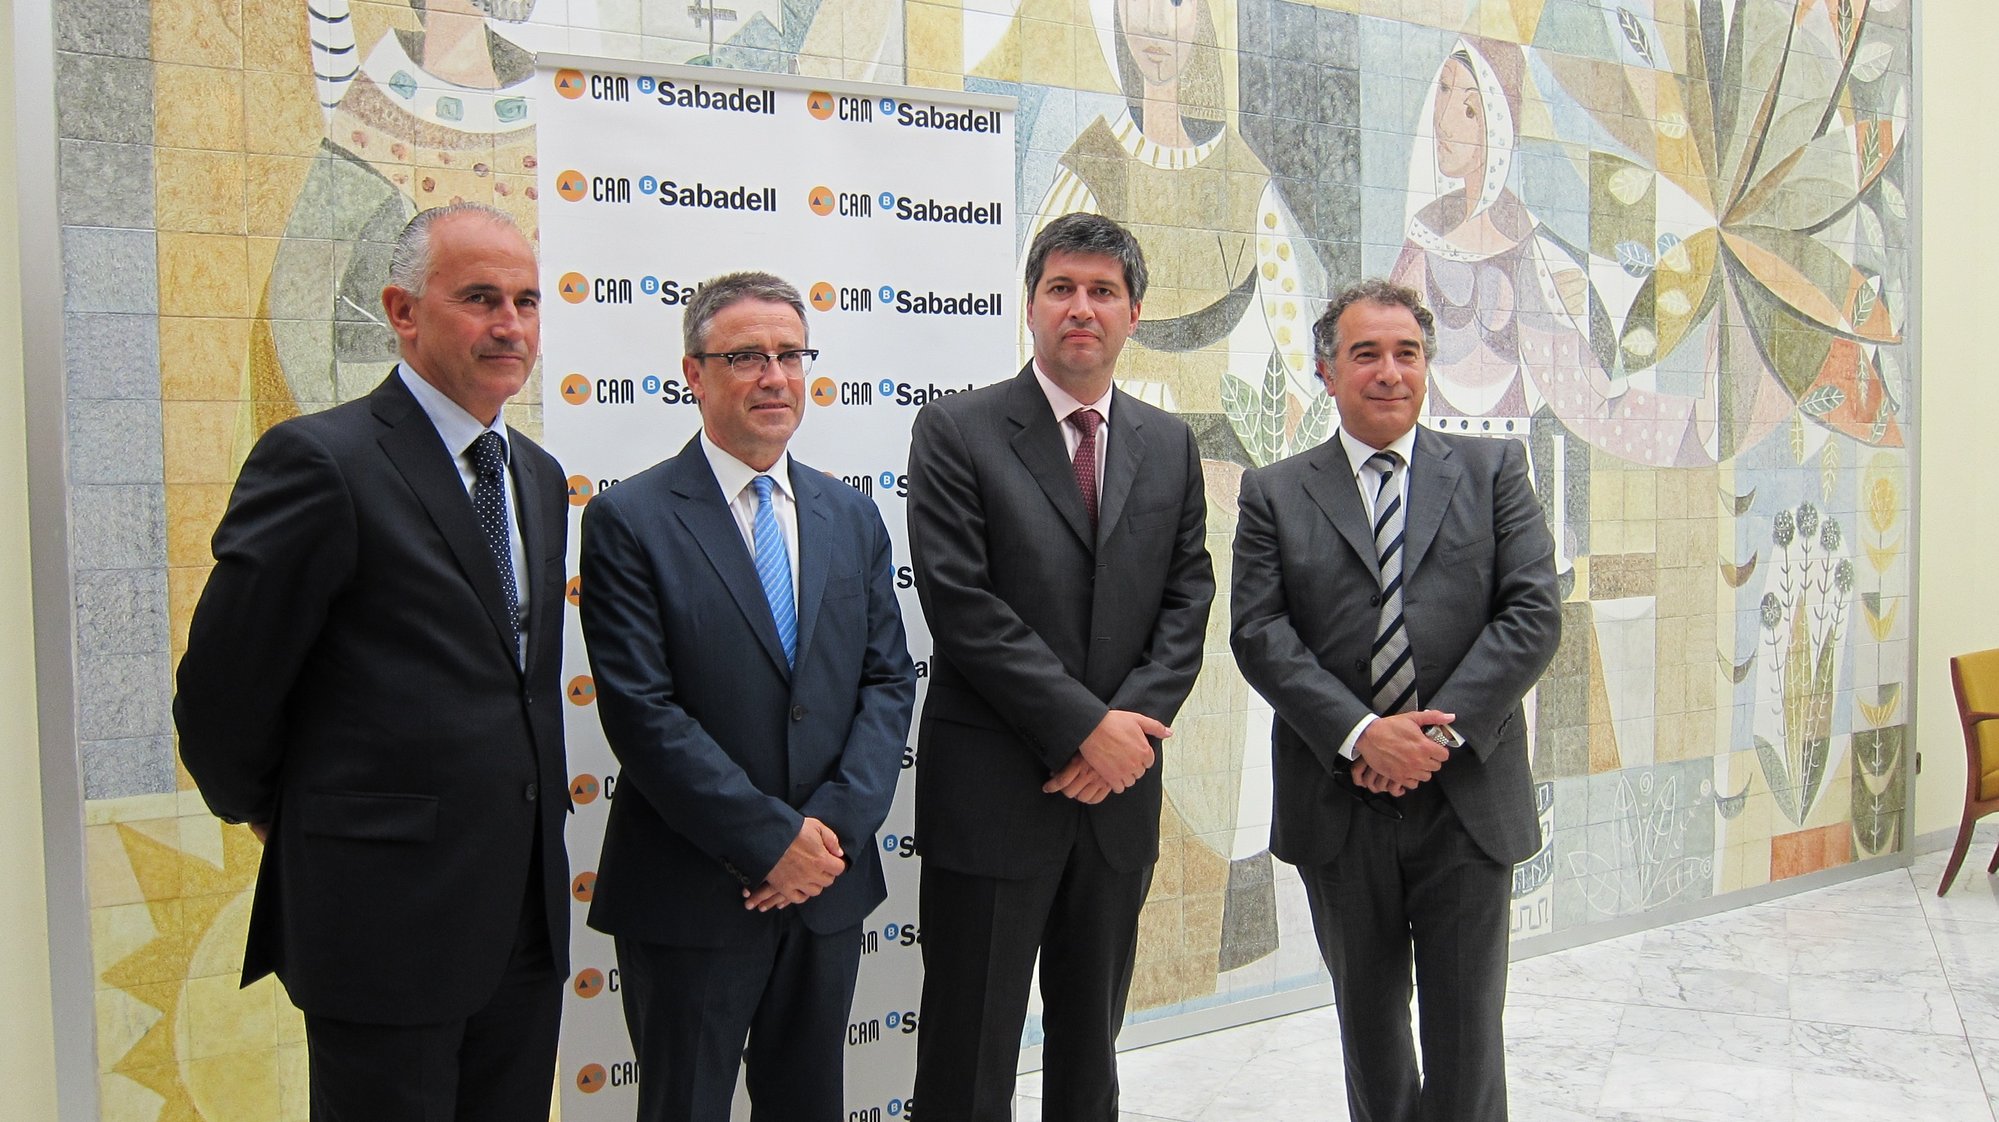 El Sabadell espera que Europa autorice la integración de la CAM antes de verano y ésta sea efectiva en diciembre